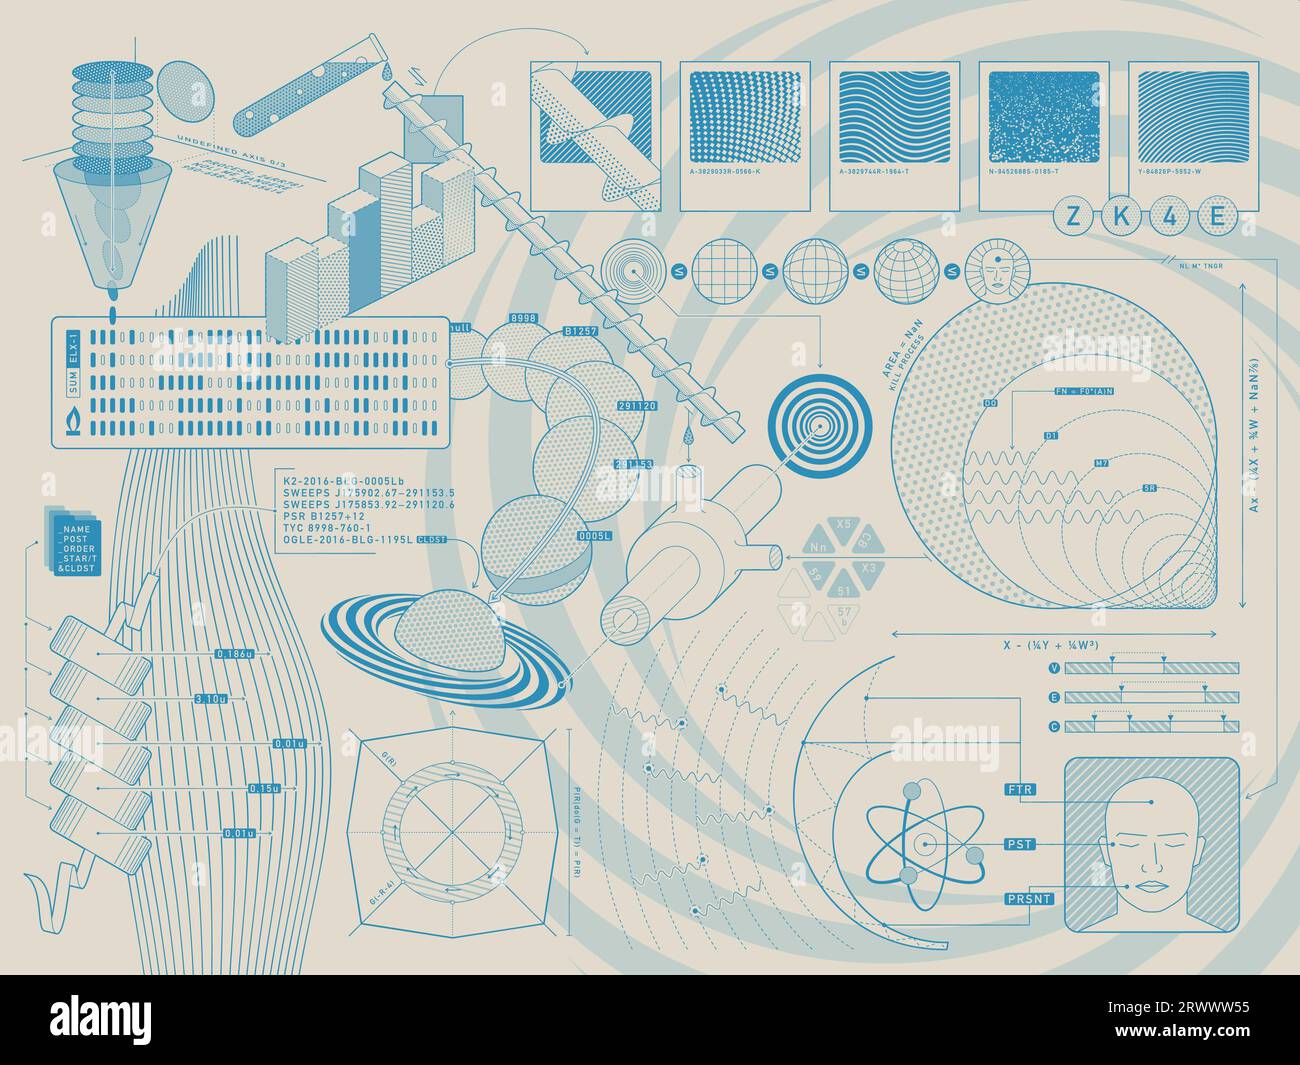 Eine Retro-futuristische visuelle Darstellung des komplexen Zusammenspiels von Wissenschaft und Technologie. Stock Vektor